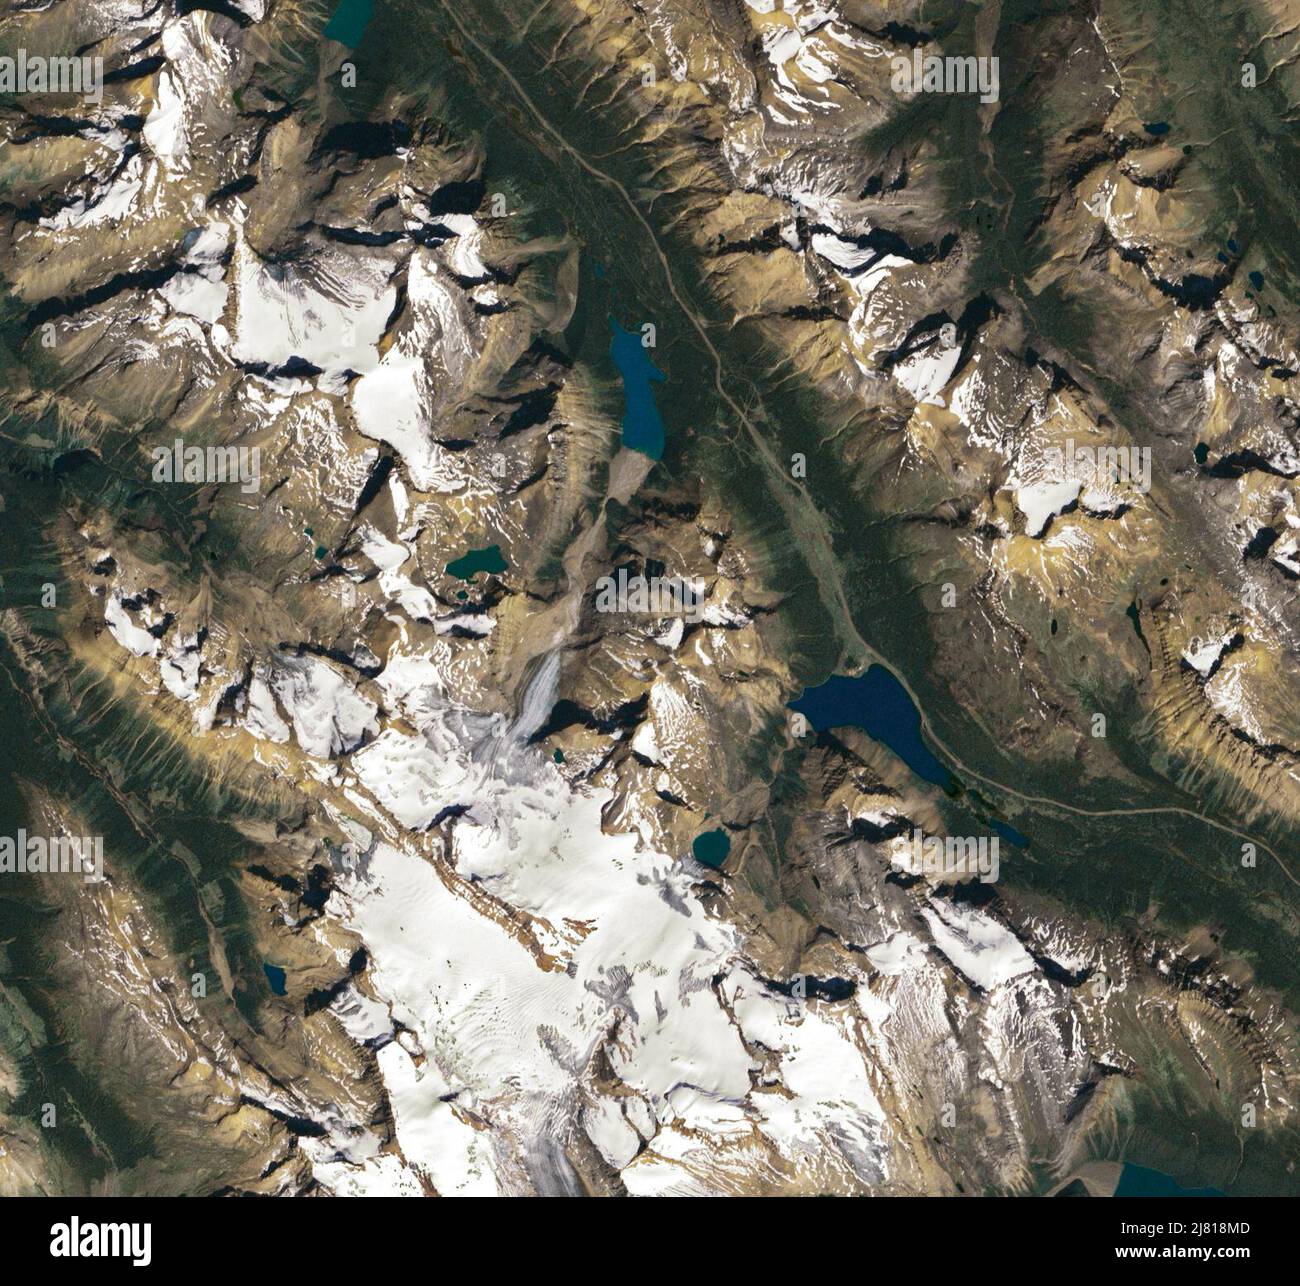 3 maggio 2022 - Canadian Rockies - DATA FOTO: 24 agosto 1999: Il ghiacciaio Peyto nel Parco Nazionale di Banff è uno dei ghiacciai più monitorati al mondo. Nel 1968, le Nazioni Unite hanno scelto Peyto come ghiacciaio di riferimento per l'iniziativa internazionale di ricerca del decennio idrologico. Da allora, squadre di scienziati hanno viaggiato regolarmente alle Montagne Rocciose canadesi per condurre lavori sul campo e calcolare i cambiamenti nella massa del ghiacciaio, fornendo alla comunità scientifica un record di dati più lungo e più dettagliato per Peyto rispetto alla maggior parte degli altri ghiacciai. Nella maggior parte degli anni, Peyto ha perso molto più massa th Foto Stock